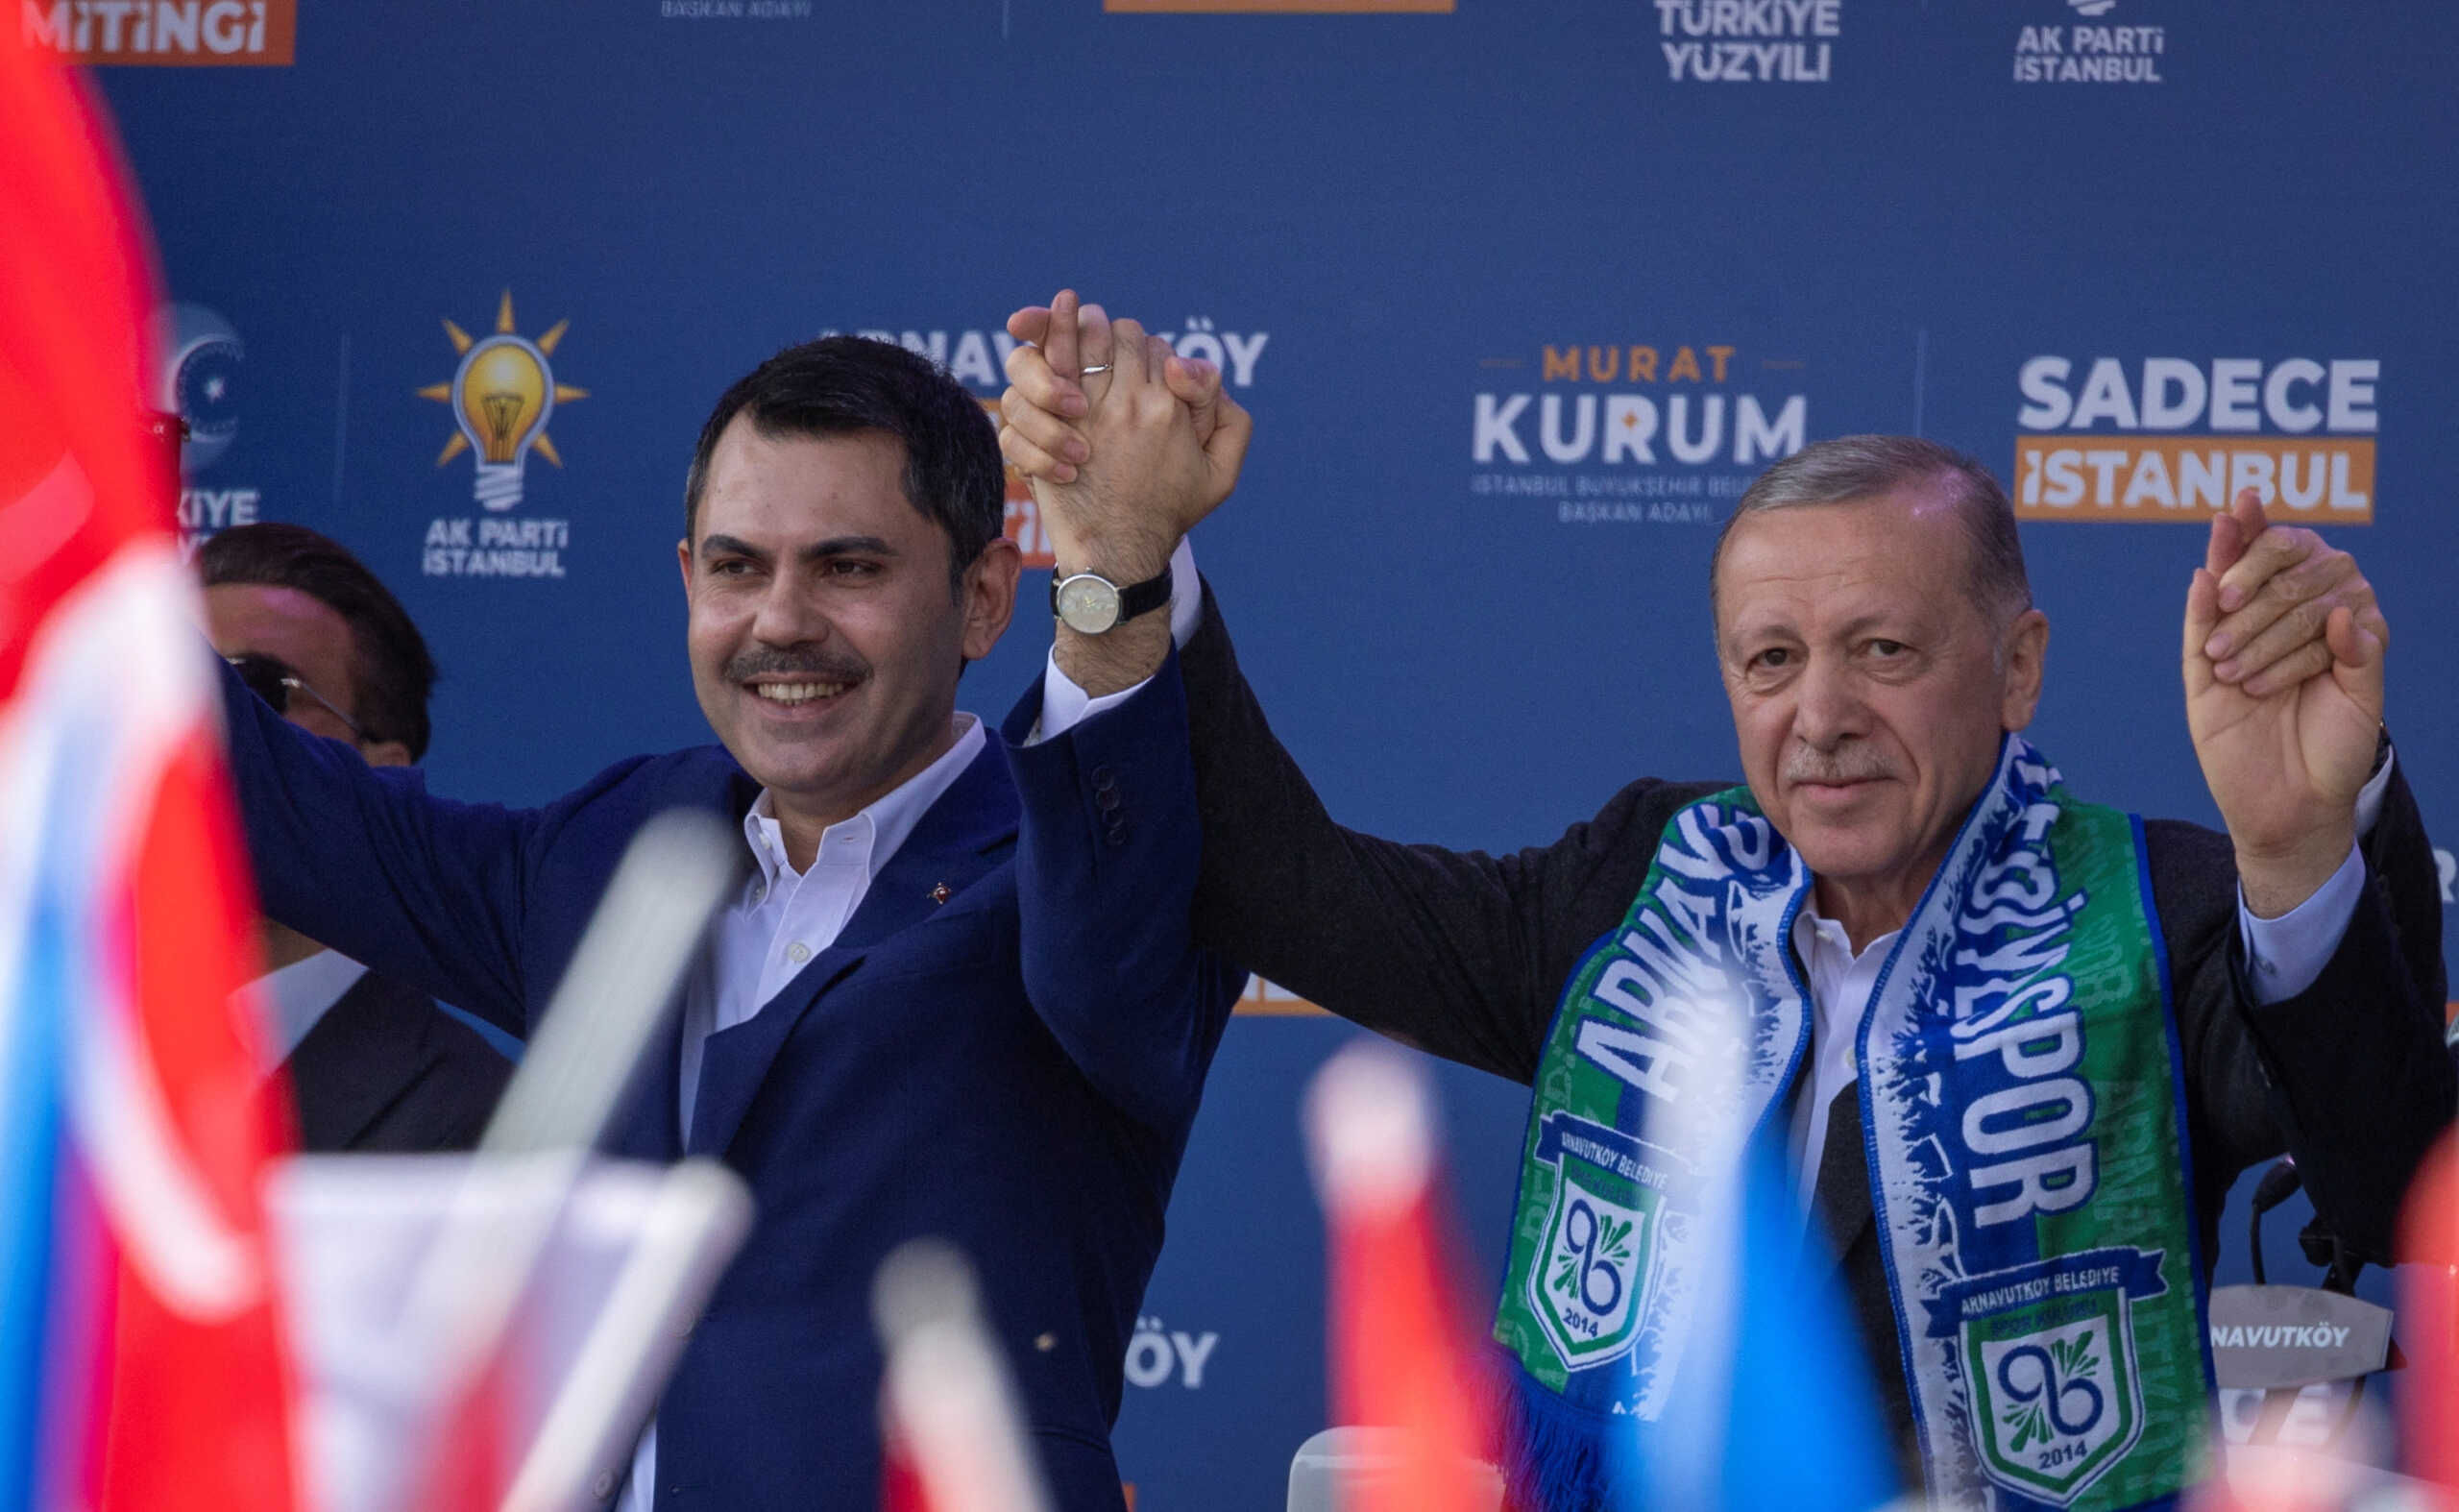 Δημοτικές εκλογές στην Τουρκία: Η στρατηγική Ερντογάν, το νέο κόμμα που τον «απειλεί» και τα assets του CHP